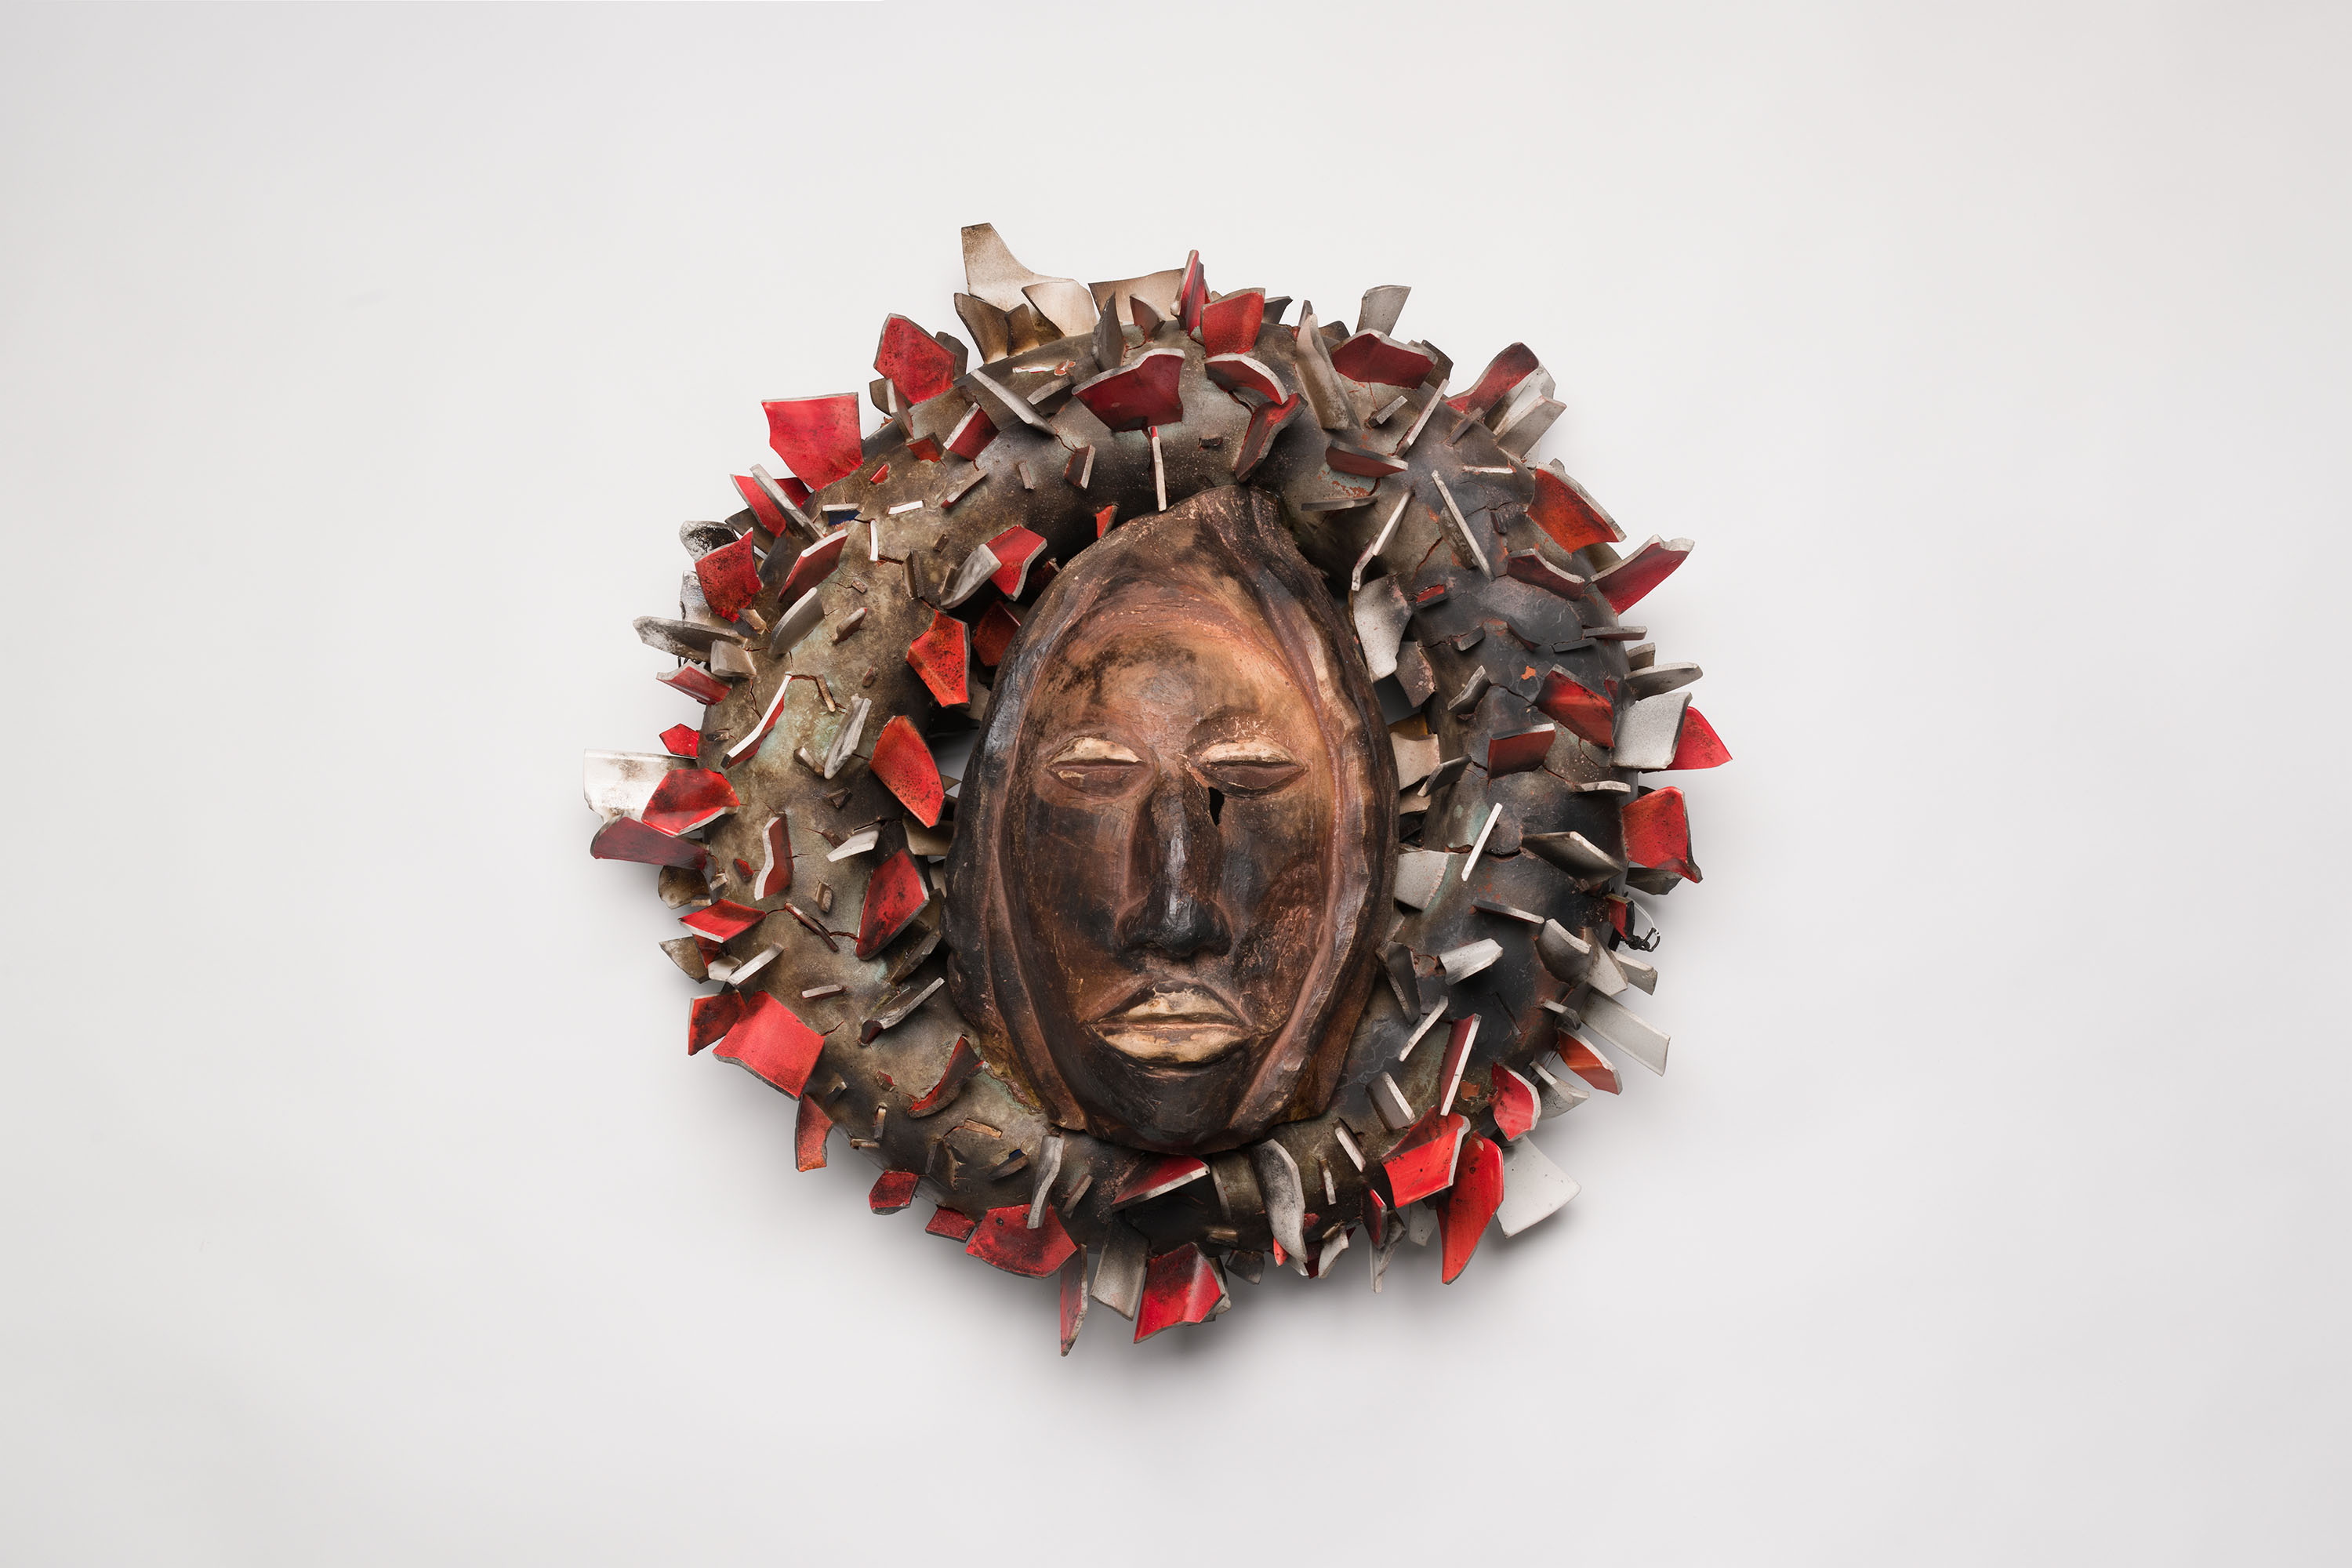 a ceramic artwork consisting of a wreath around a face